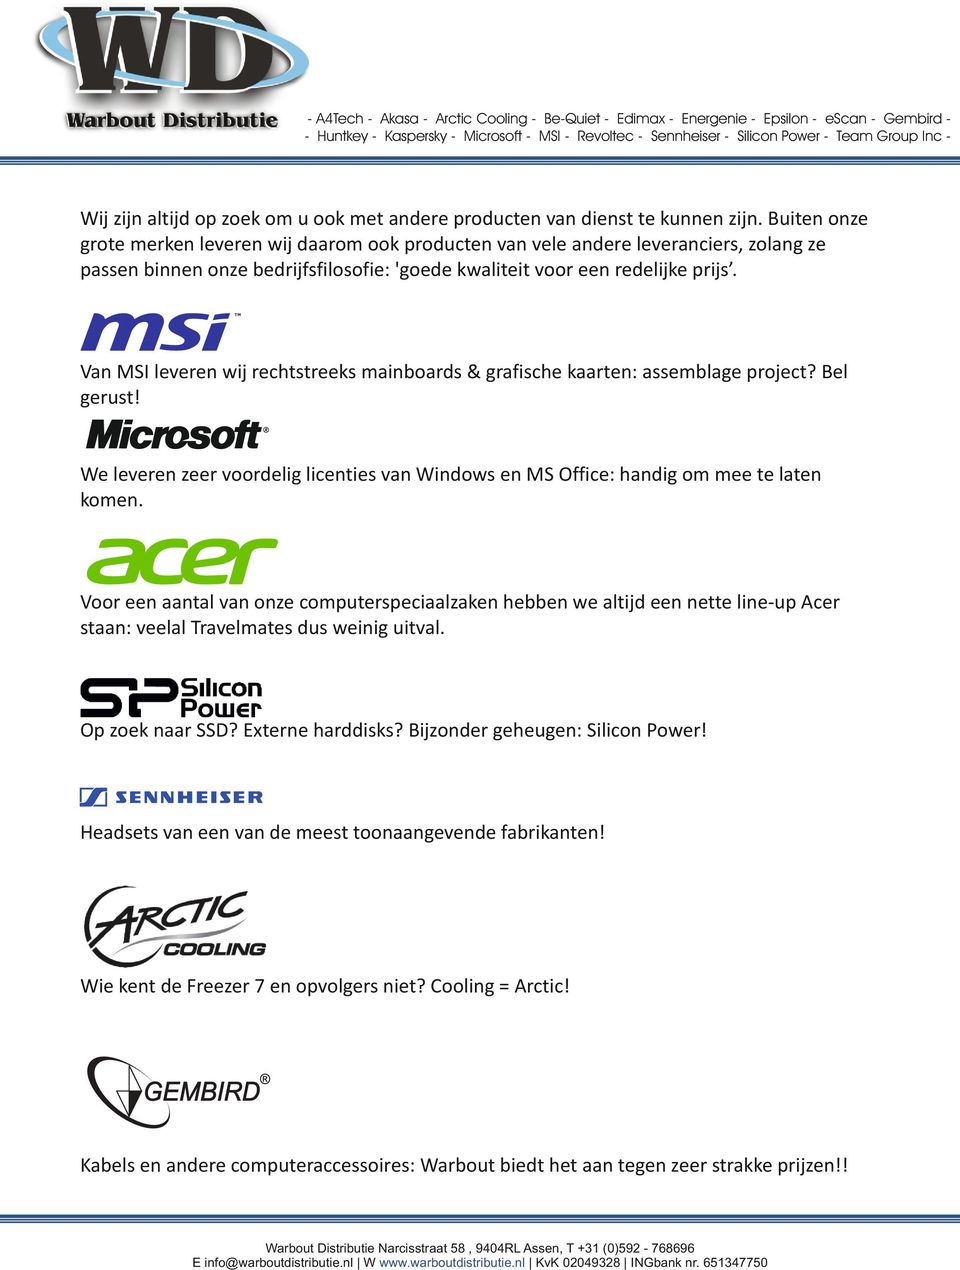 Van MSI leveren wij rechtstreeks mainboards & grafische kaarten: assemblage project? Bel gerust! We leveren zeer voordelig licenties van Windows en MS Office: handig om mee te laten komen.